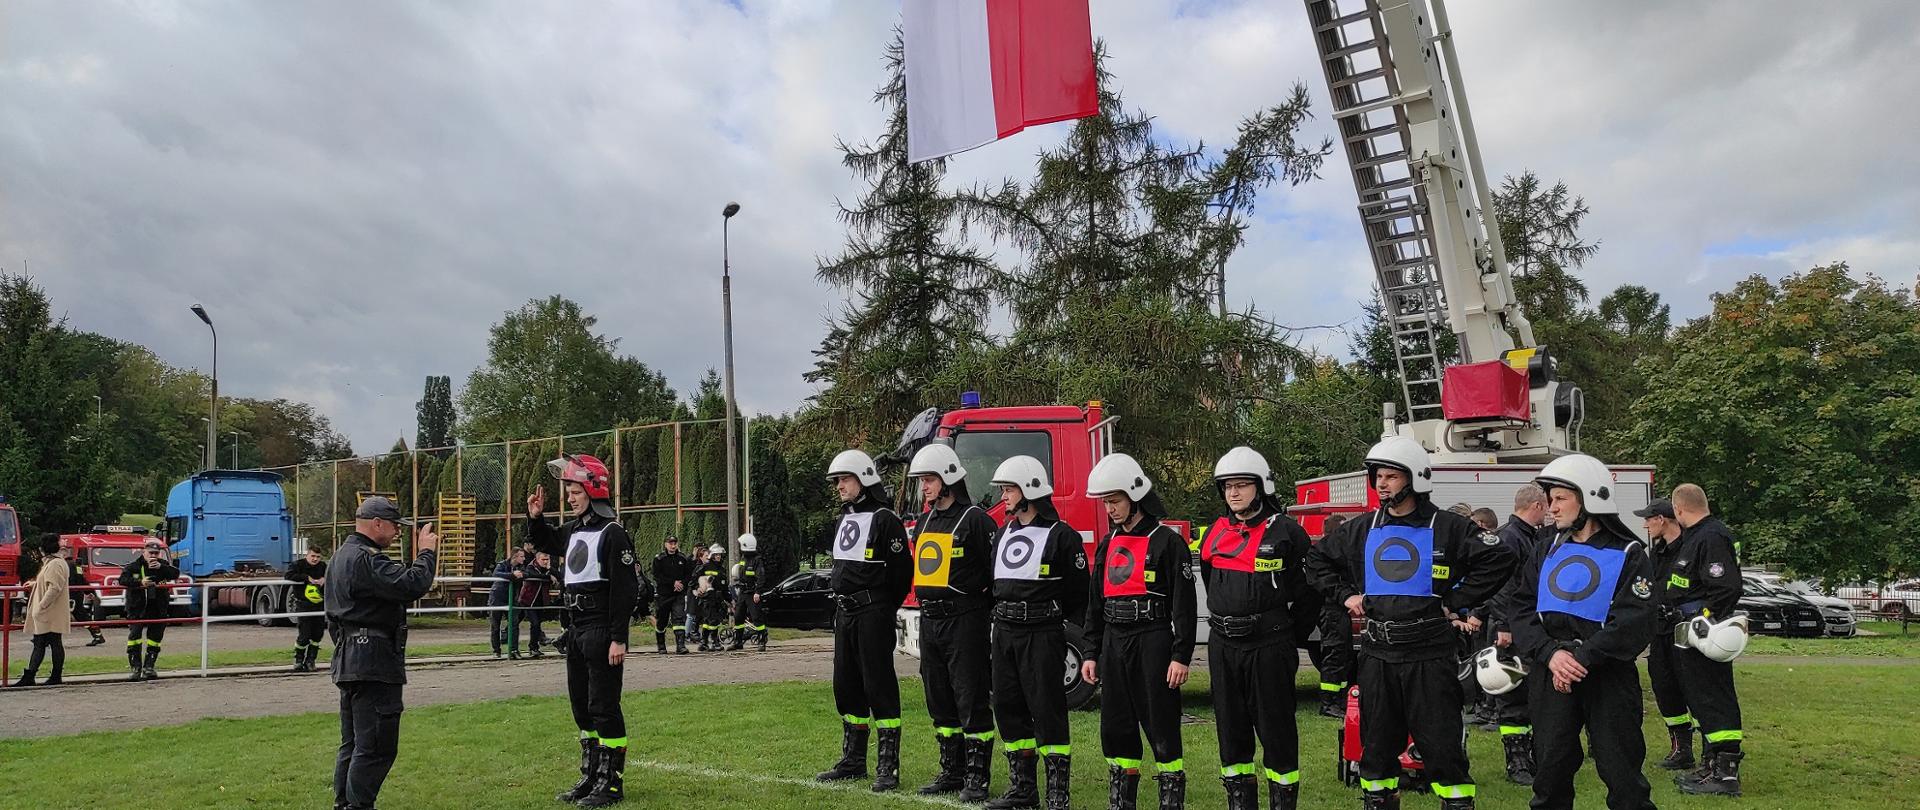 Na zdjęciu drużyna gotowa do ćwiczeń w mundurach oraz znacznikach. Z tyłu stoi podnośnik strażacki z podniesioną flagą państwową.